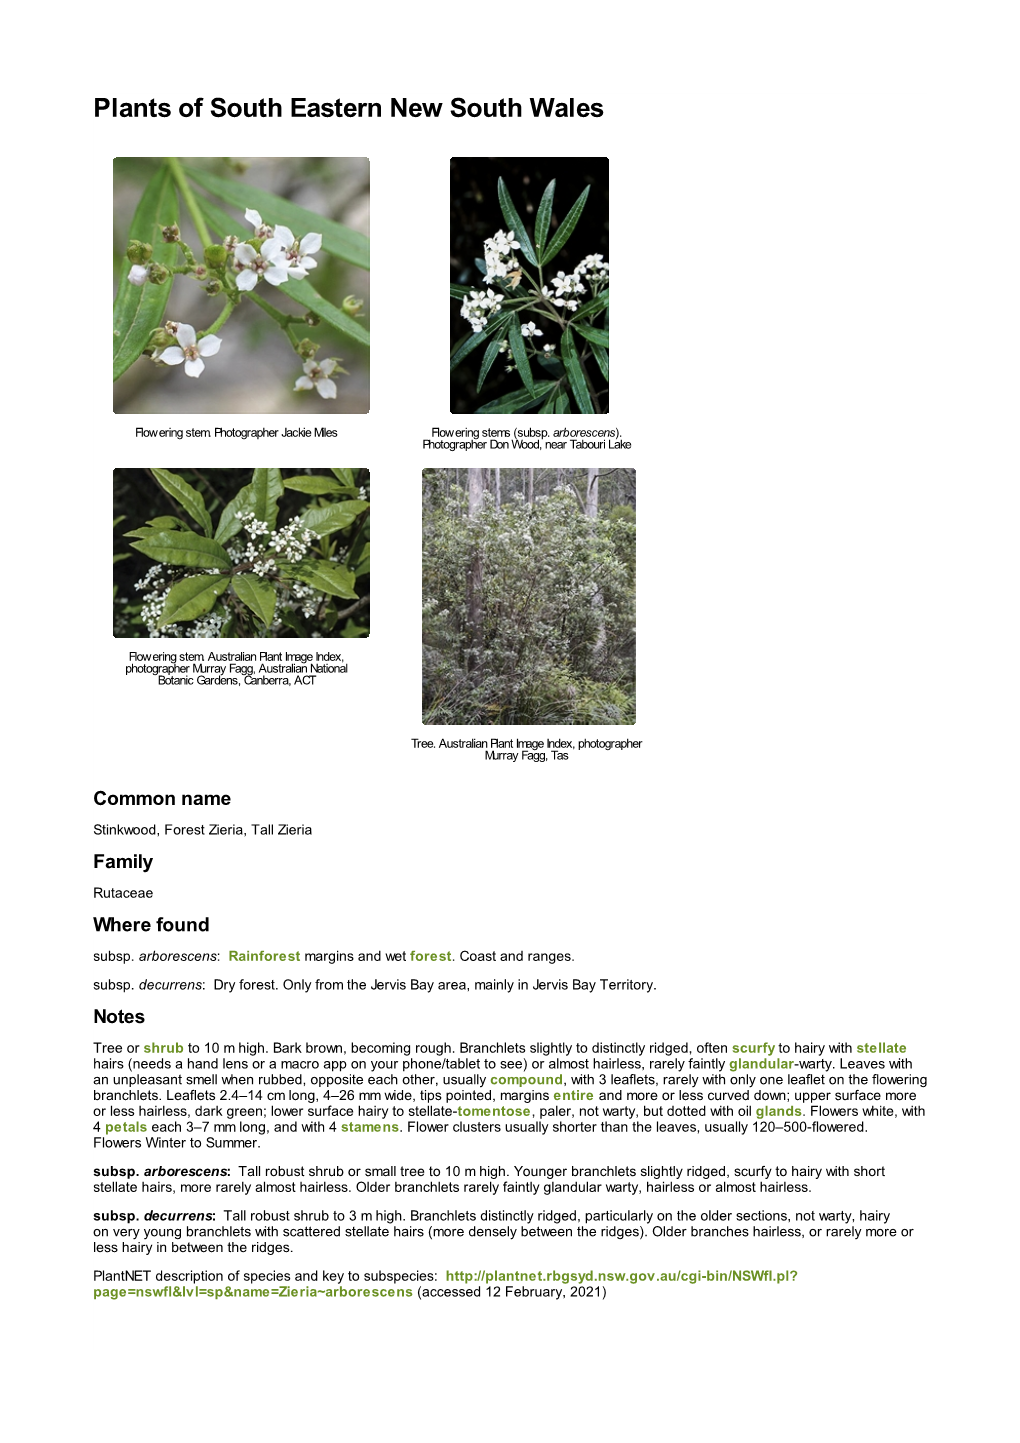 Zieria Arborescens